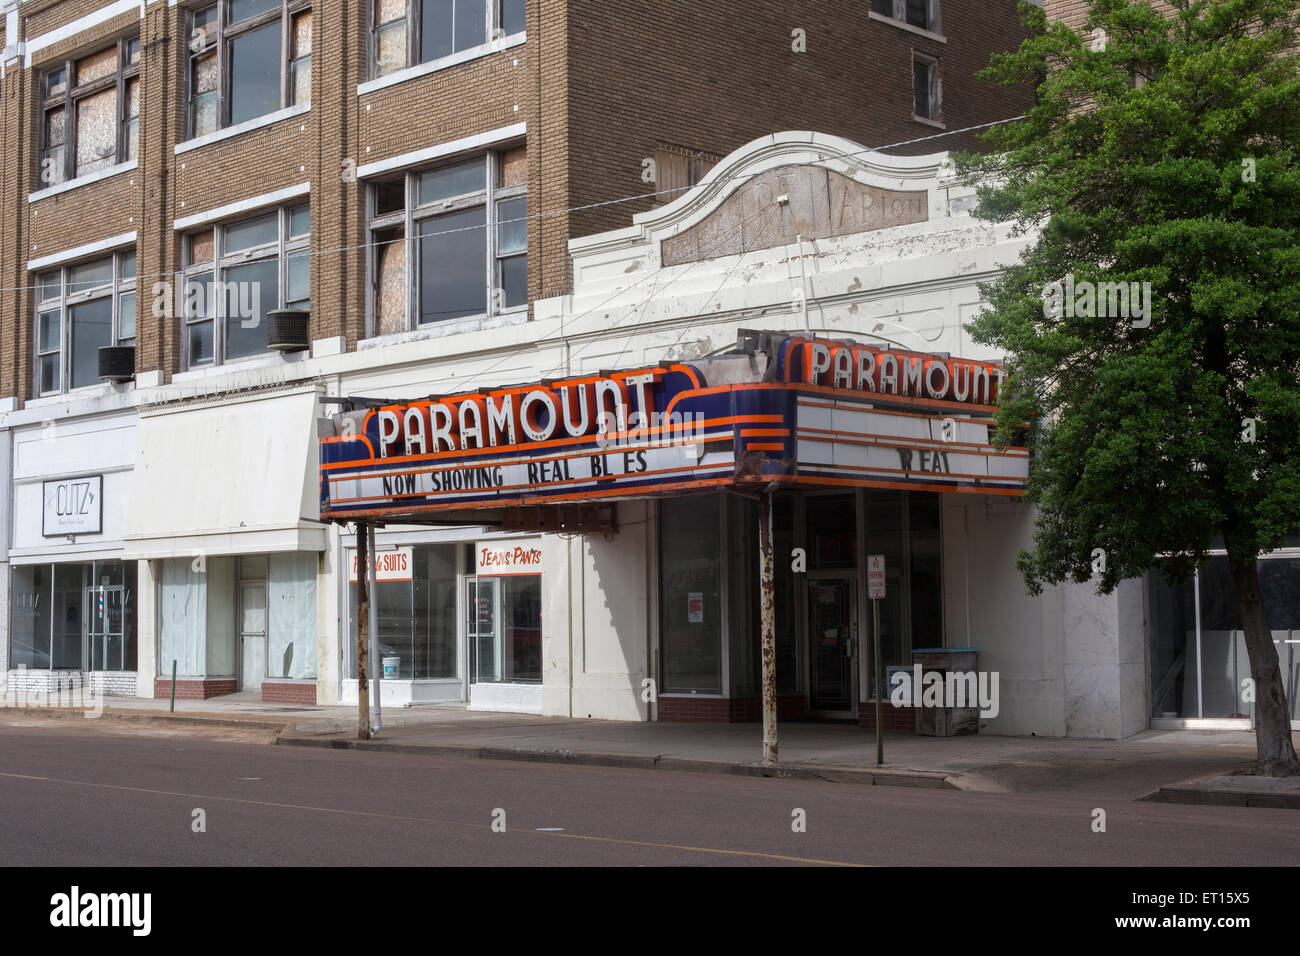 Clarksdale, Mississippi - bâtiments vacants, y compris le Paramount Theatre, à l'affiche 'Real Blues.' Banque D'Images